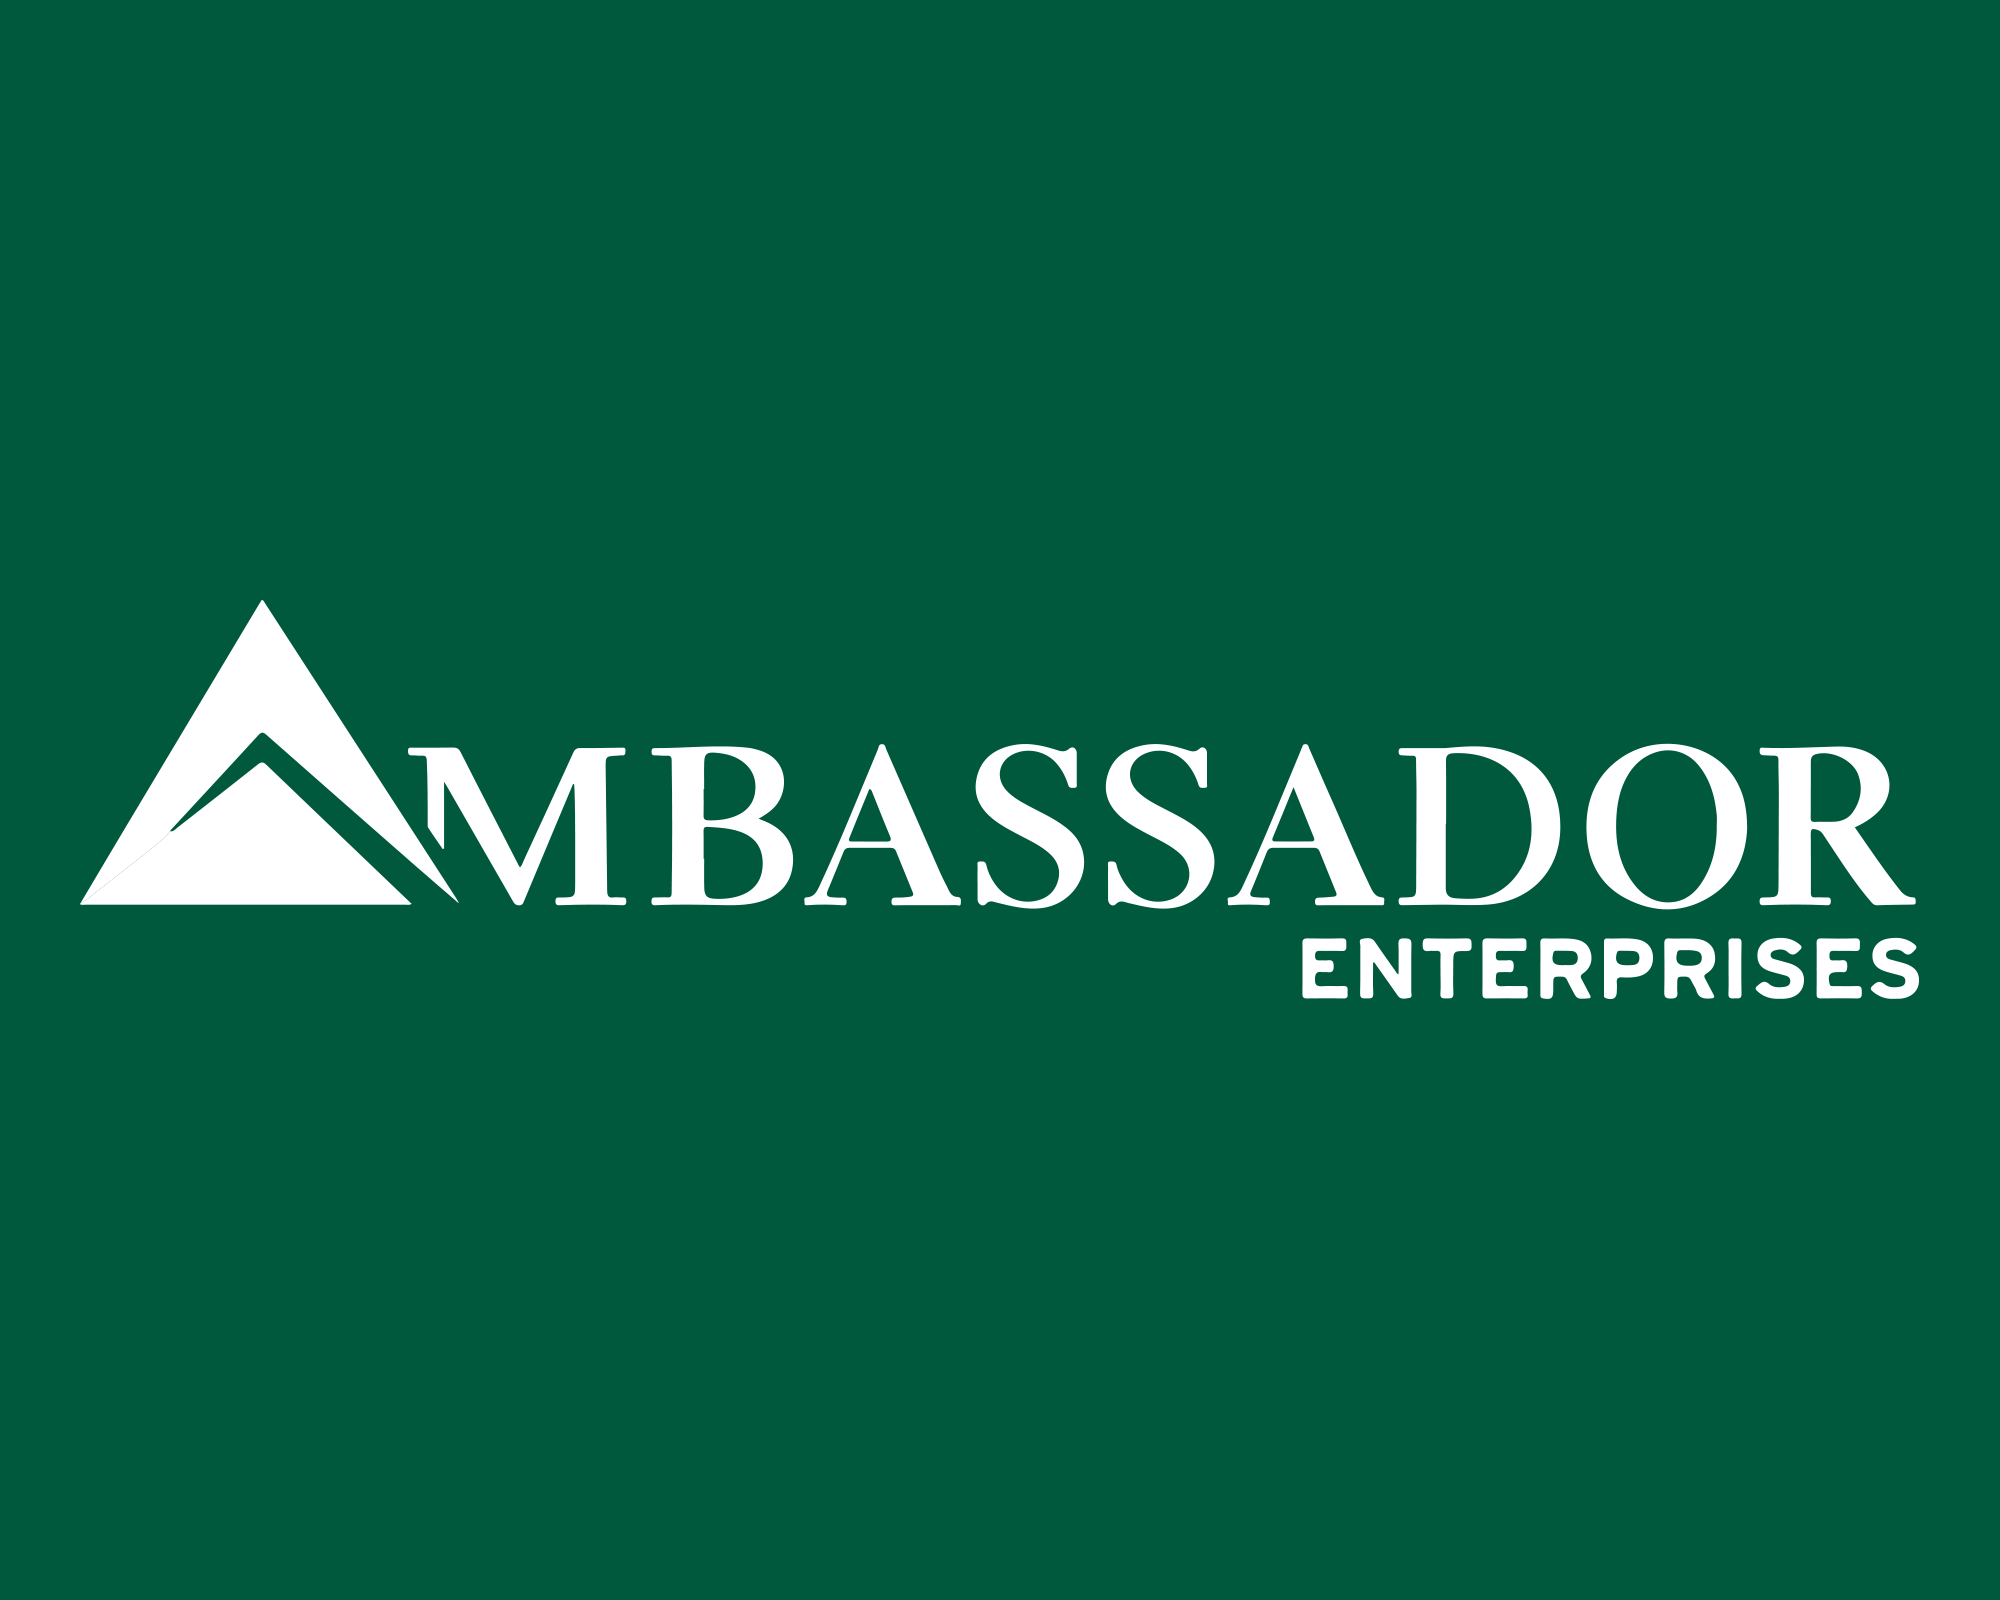 (c) Ambassador-enterprises.com